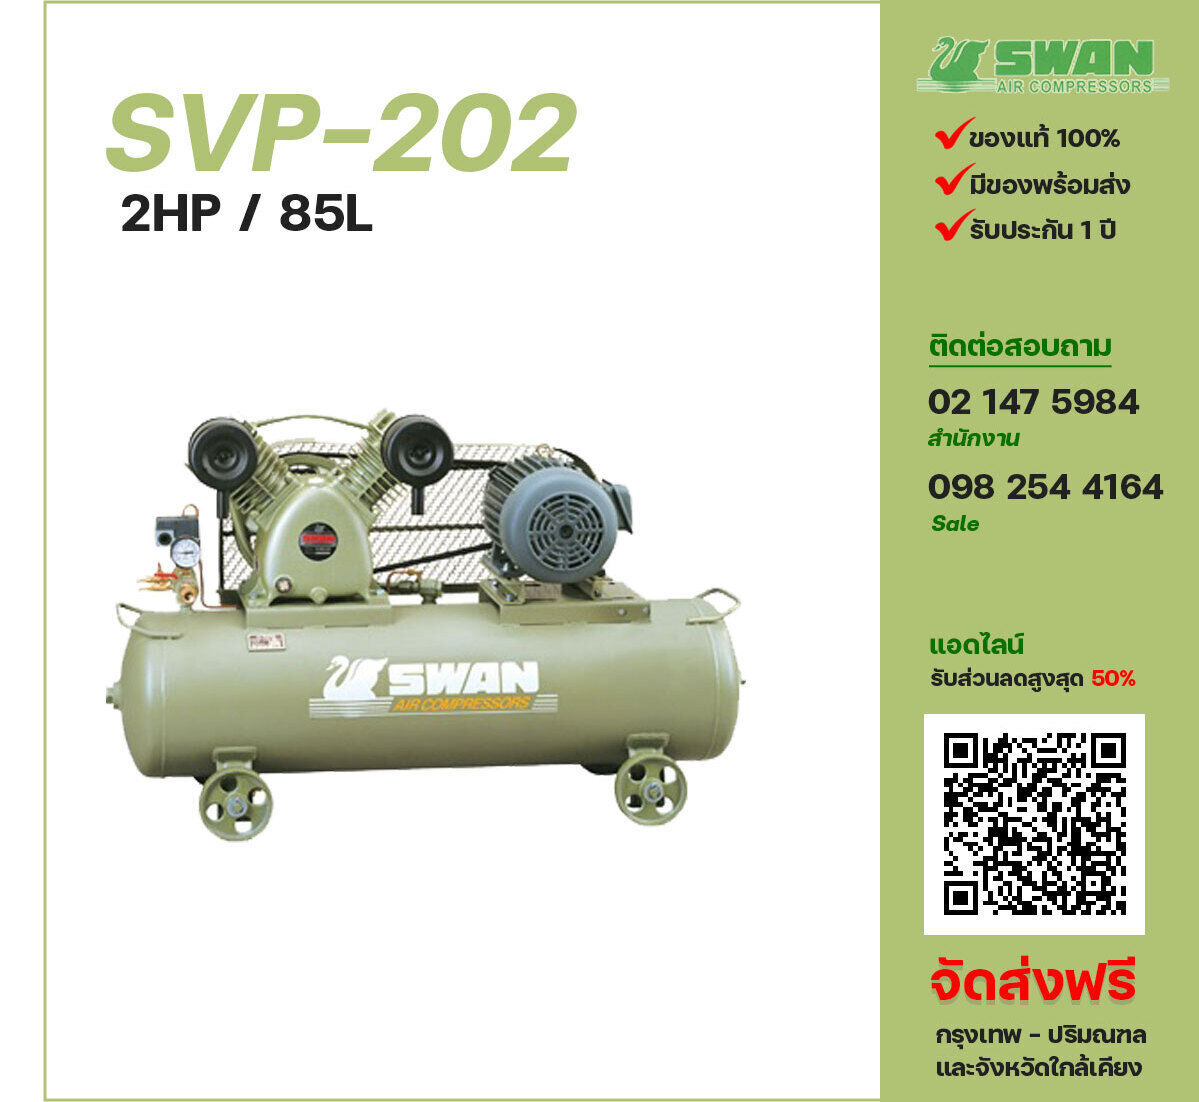 ปั๊มลมสวอน SWAN SVP-202 220V/380V ปั๊มลมลูกสูบ ขนาด 2 สูบ 2 แรงม้า 85 ลิตร SWAN พร้อมมอเตอร์ ไฟ 220V/380V ส่งฟรี กรุงเทพฯ-ปริมณฑล รับประกัน 1 ปี